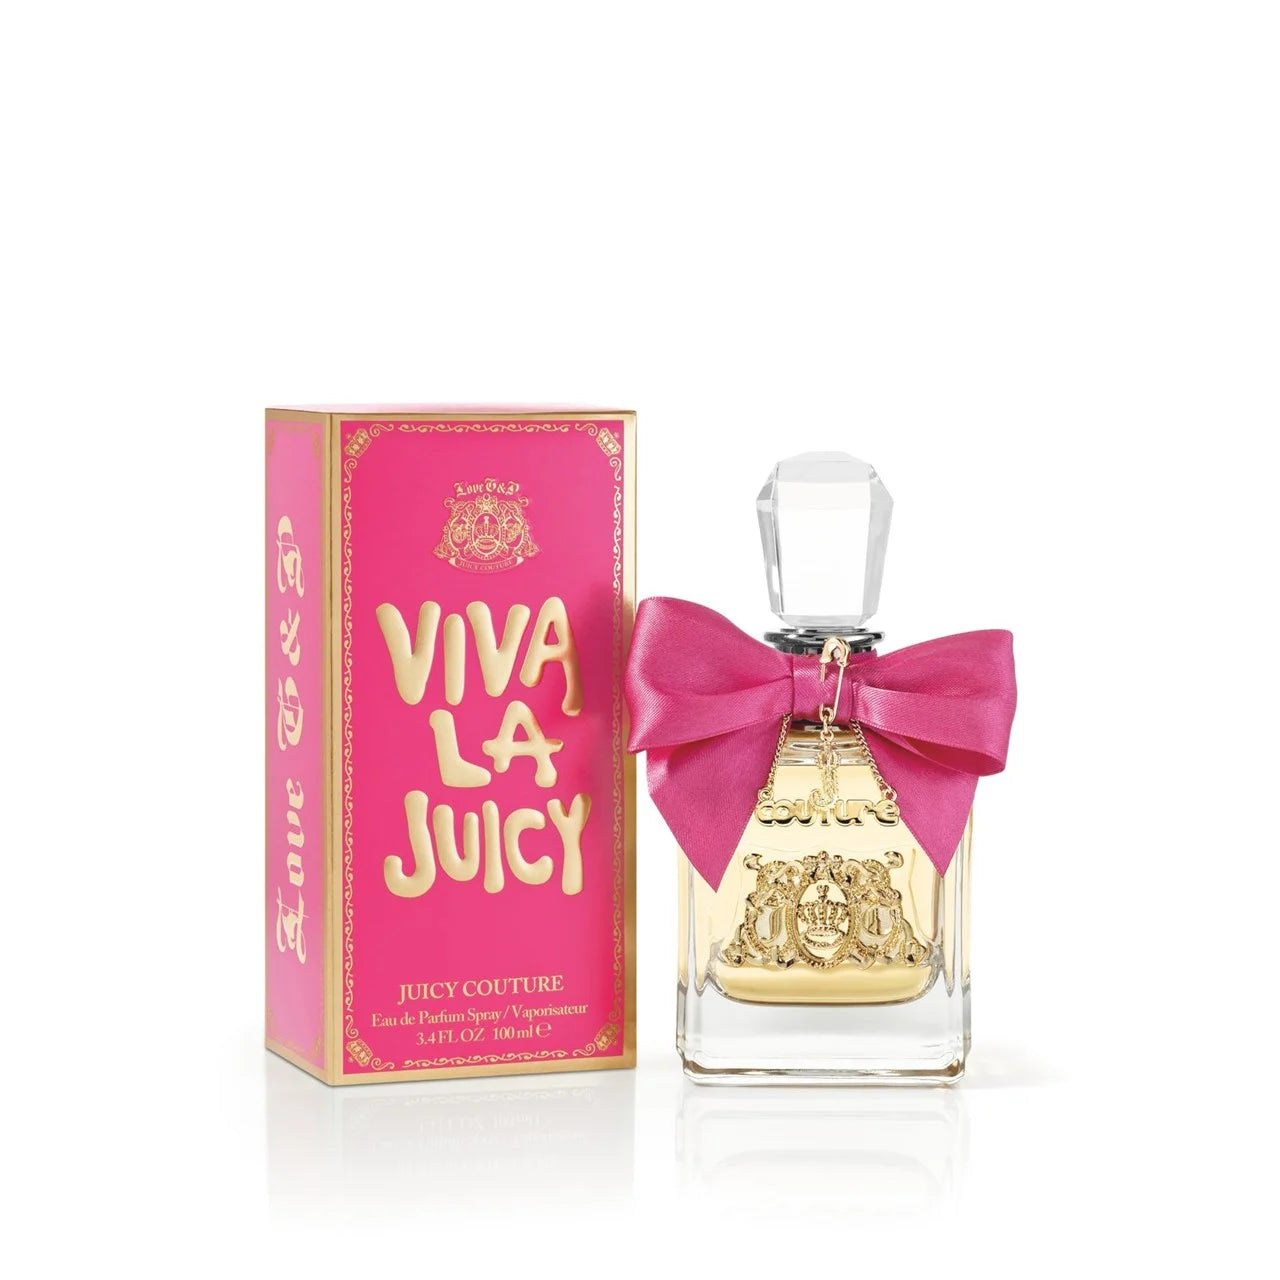 Juicy Couture Viva La Juicy Eau de Parfum Spray 100mL